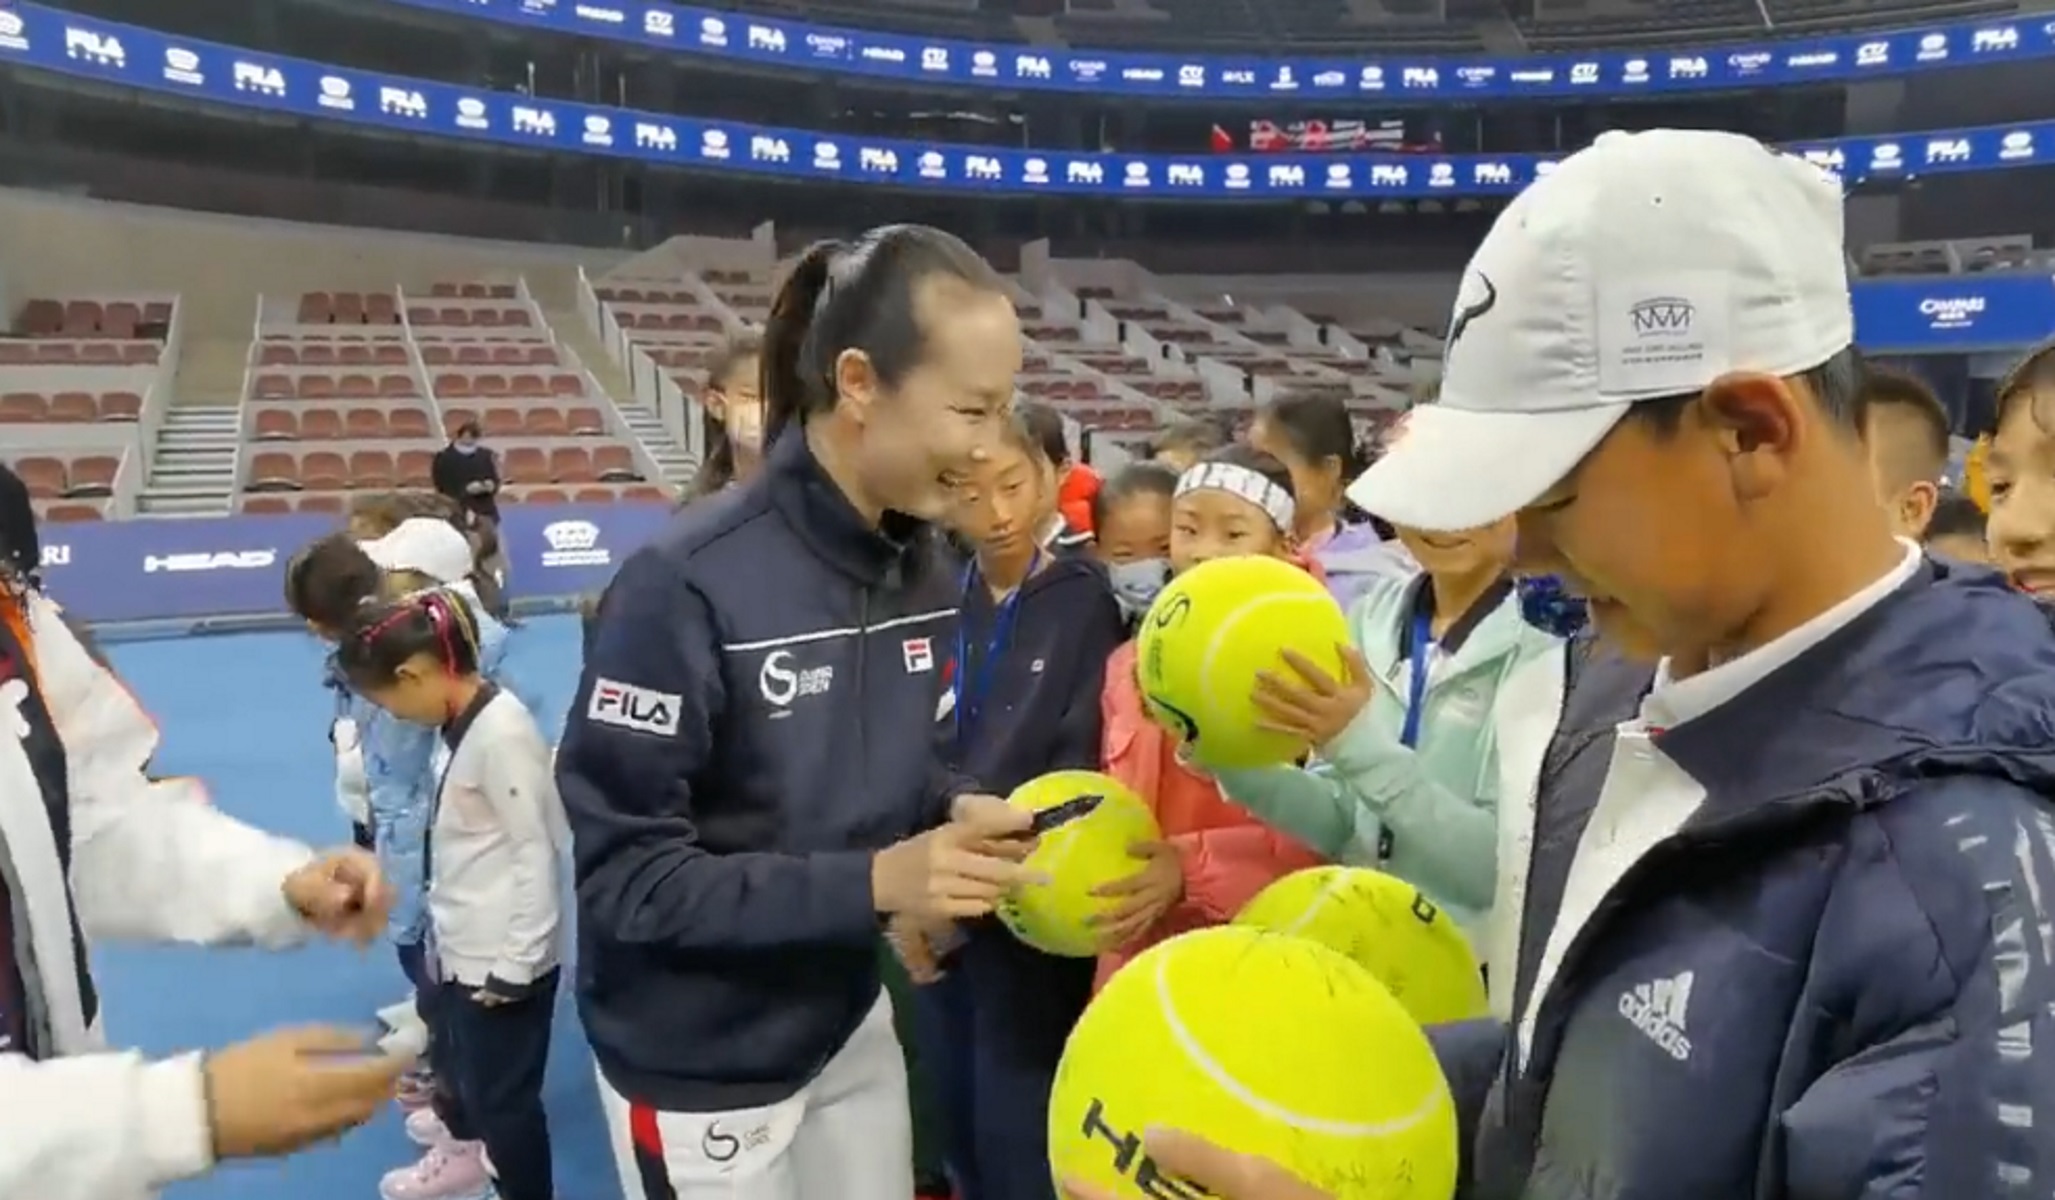 Πενγκ Σουάι: Η επανεμφάνιση της Κινέζας τενίστριας μετά την παγκόσμια ανησυχία – Αμφισβητεί τα video η WTA